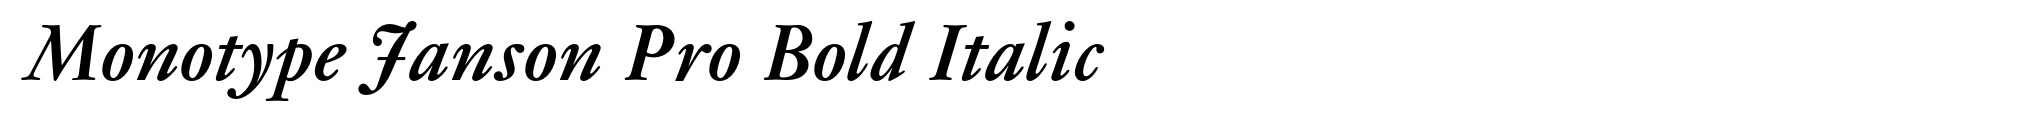 Monotype Janson Pro Bold Italic image